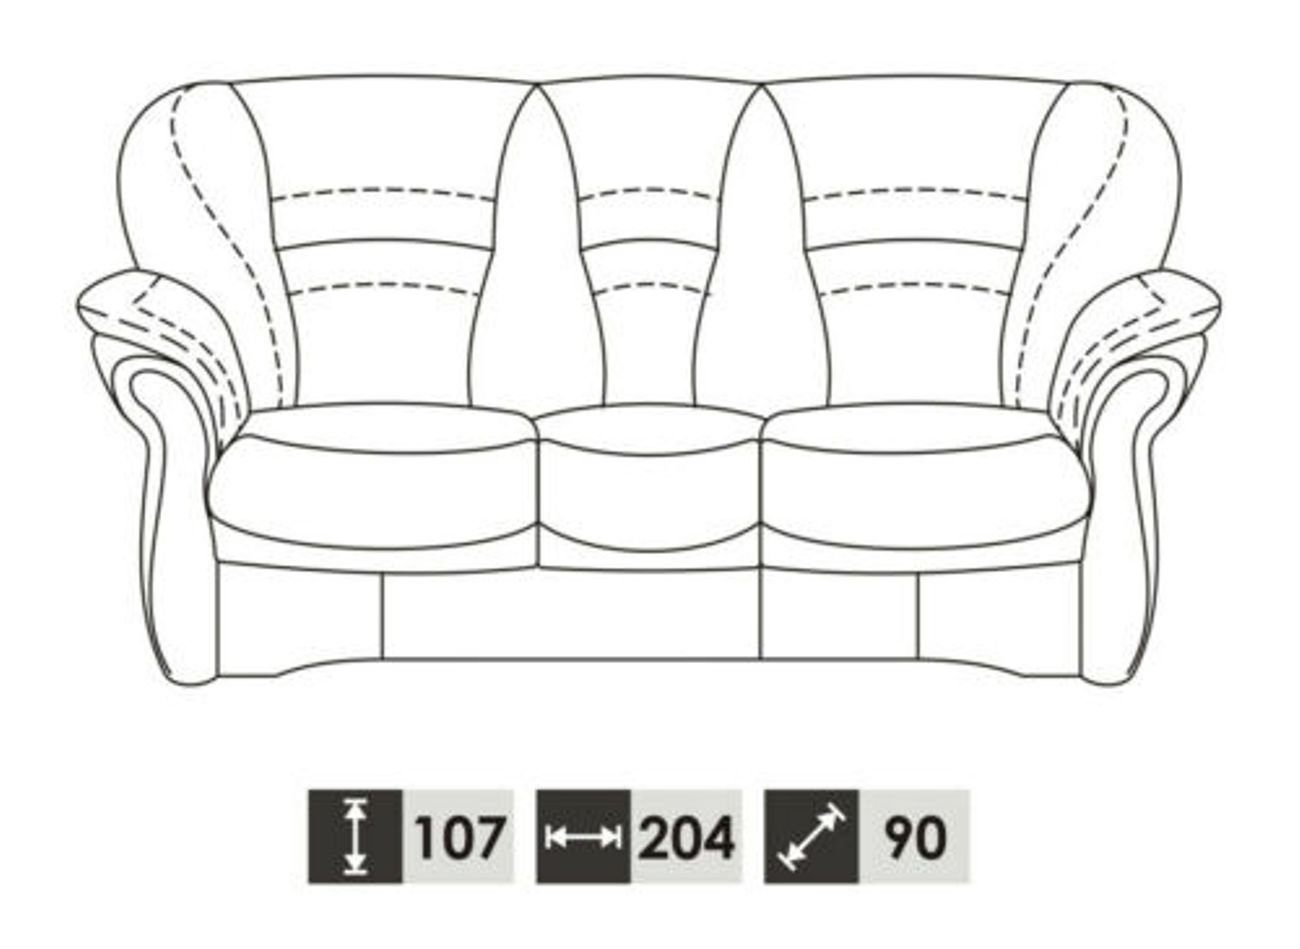 Wohnzimmer Klassische Made 3+2+1 in JVmoebel Europe Garnitur 100% Vollleder Sofa Couch,